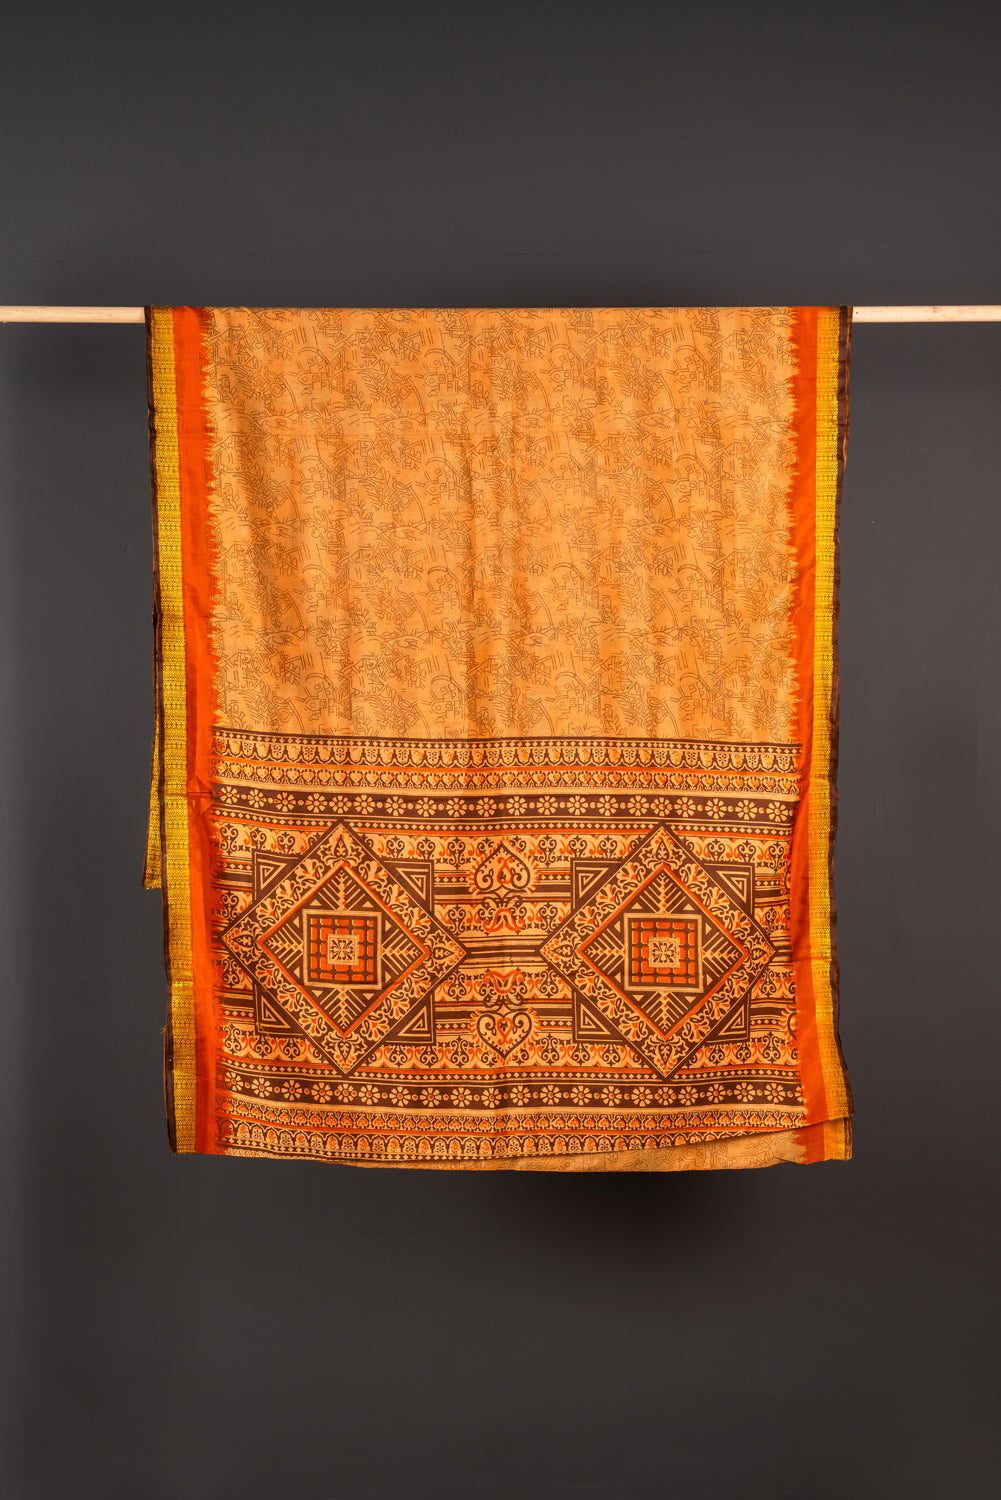 Vintage Rayon Sari - 5 Metres Long - 4371